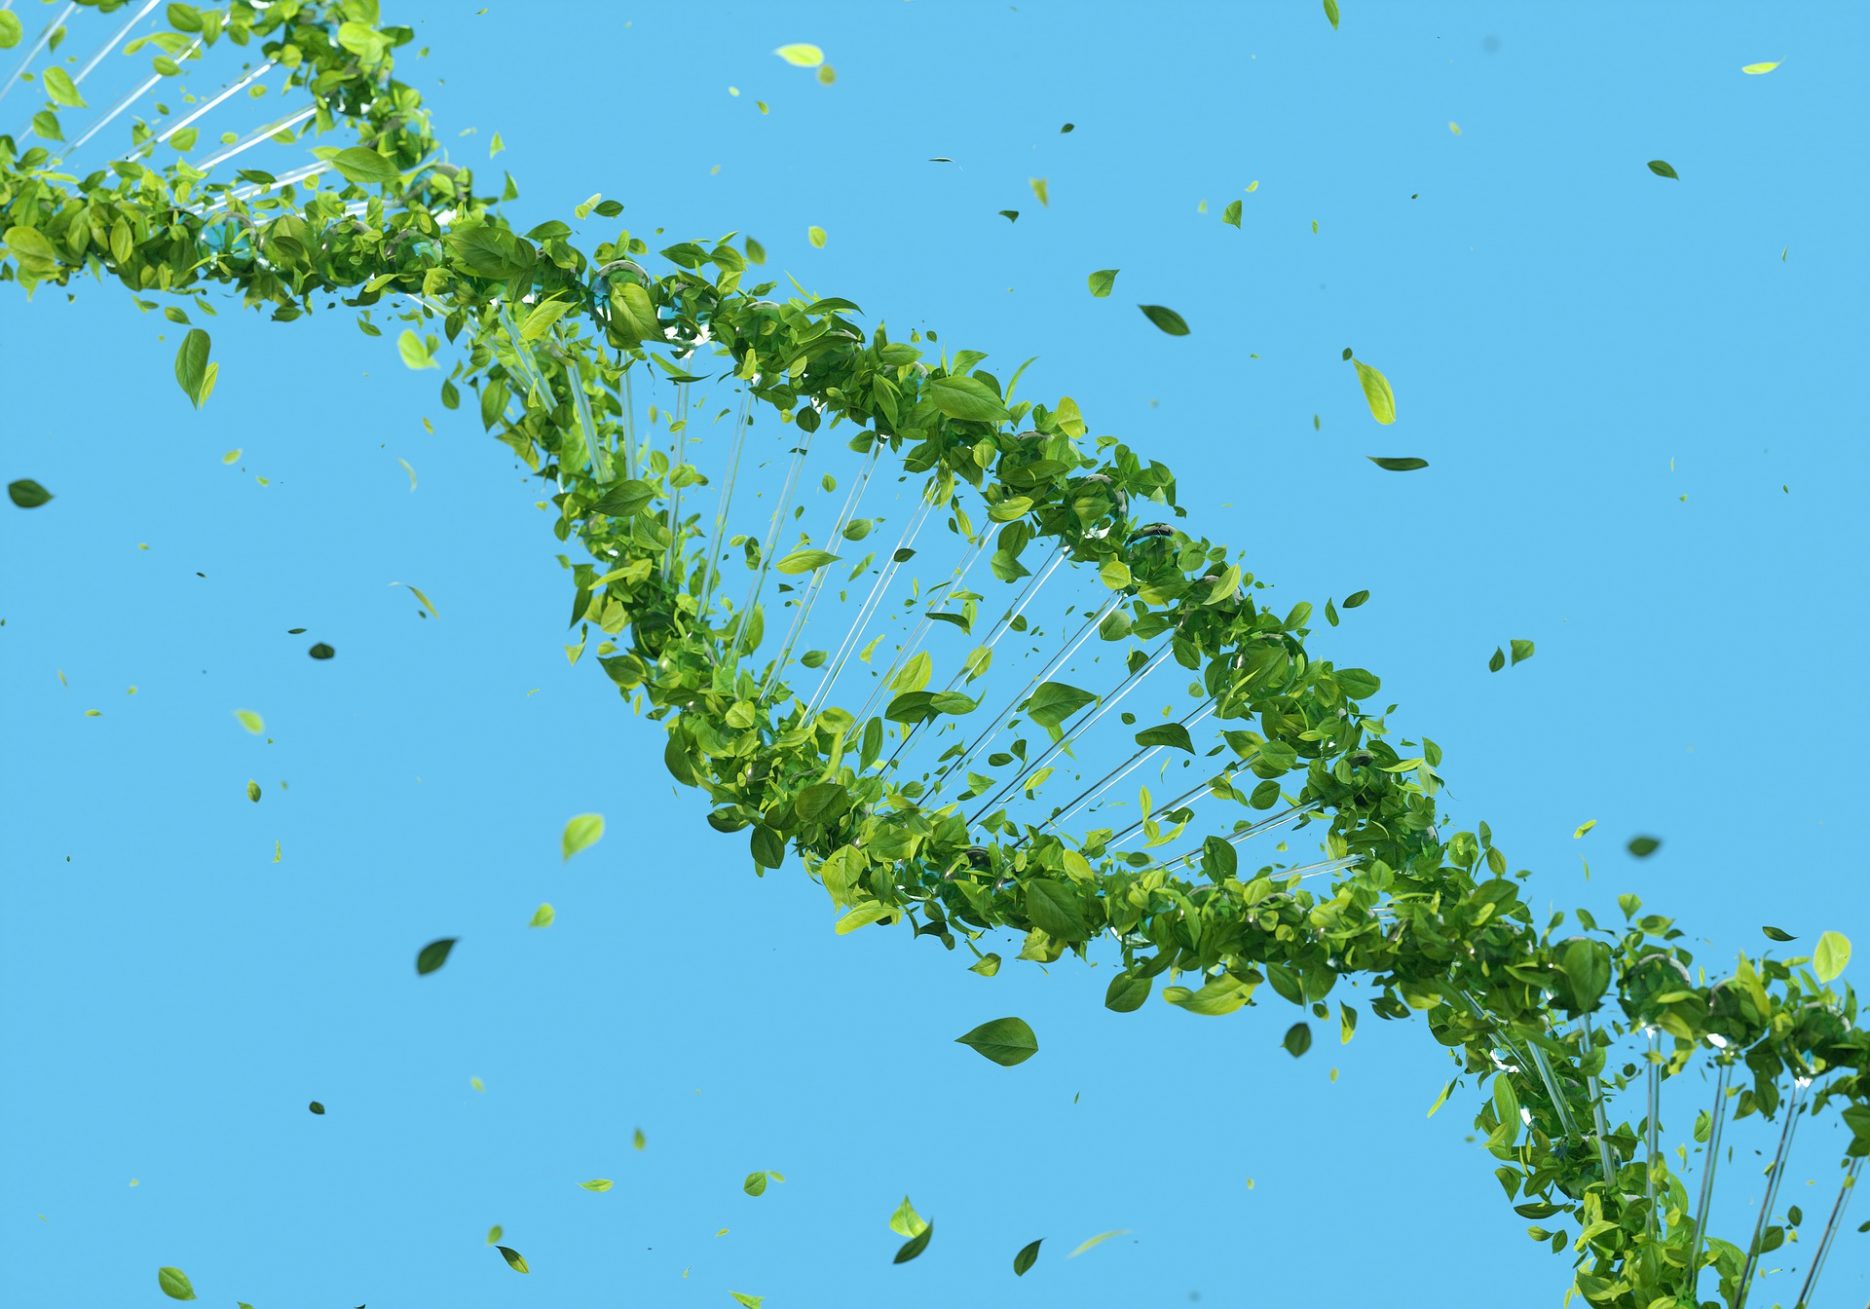 Das Bild zeigt eine Doppelhelix, die aus grünen Blättern besteht.